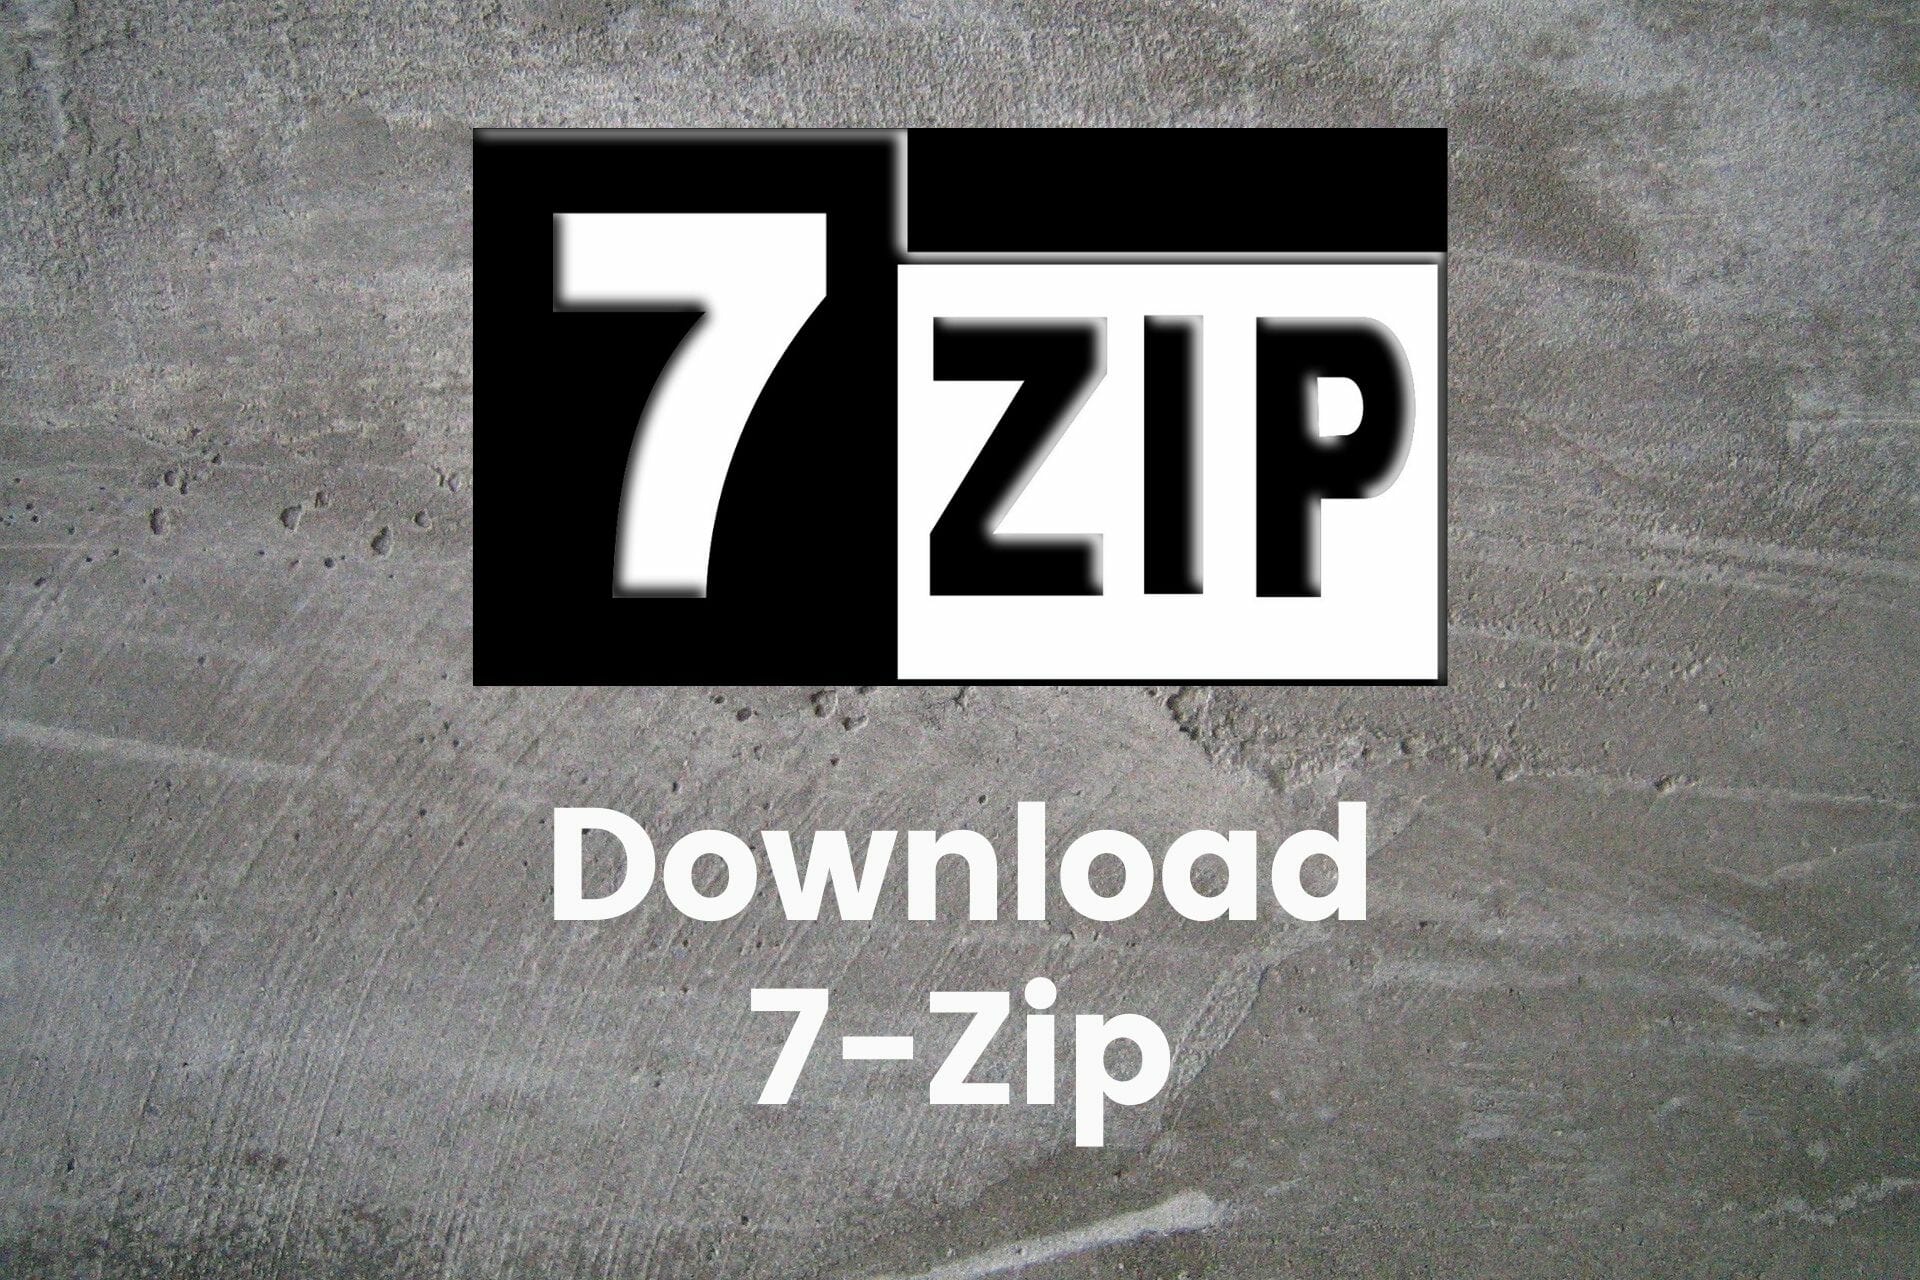 yt downloader zip